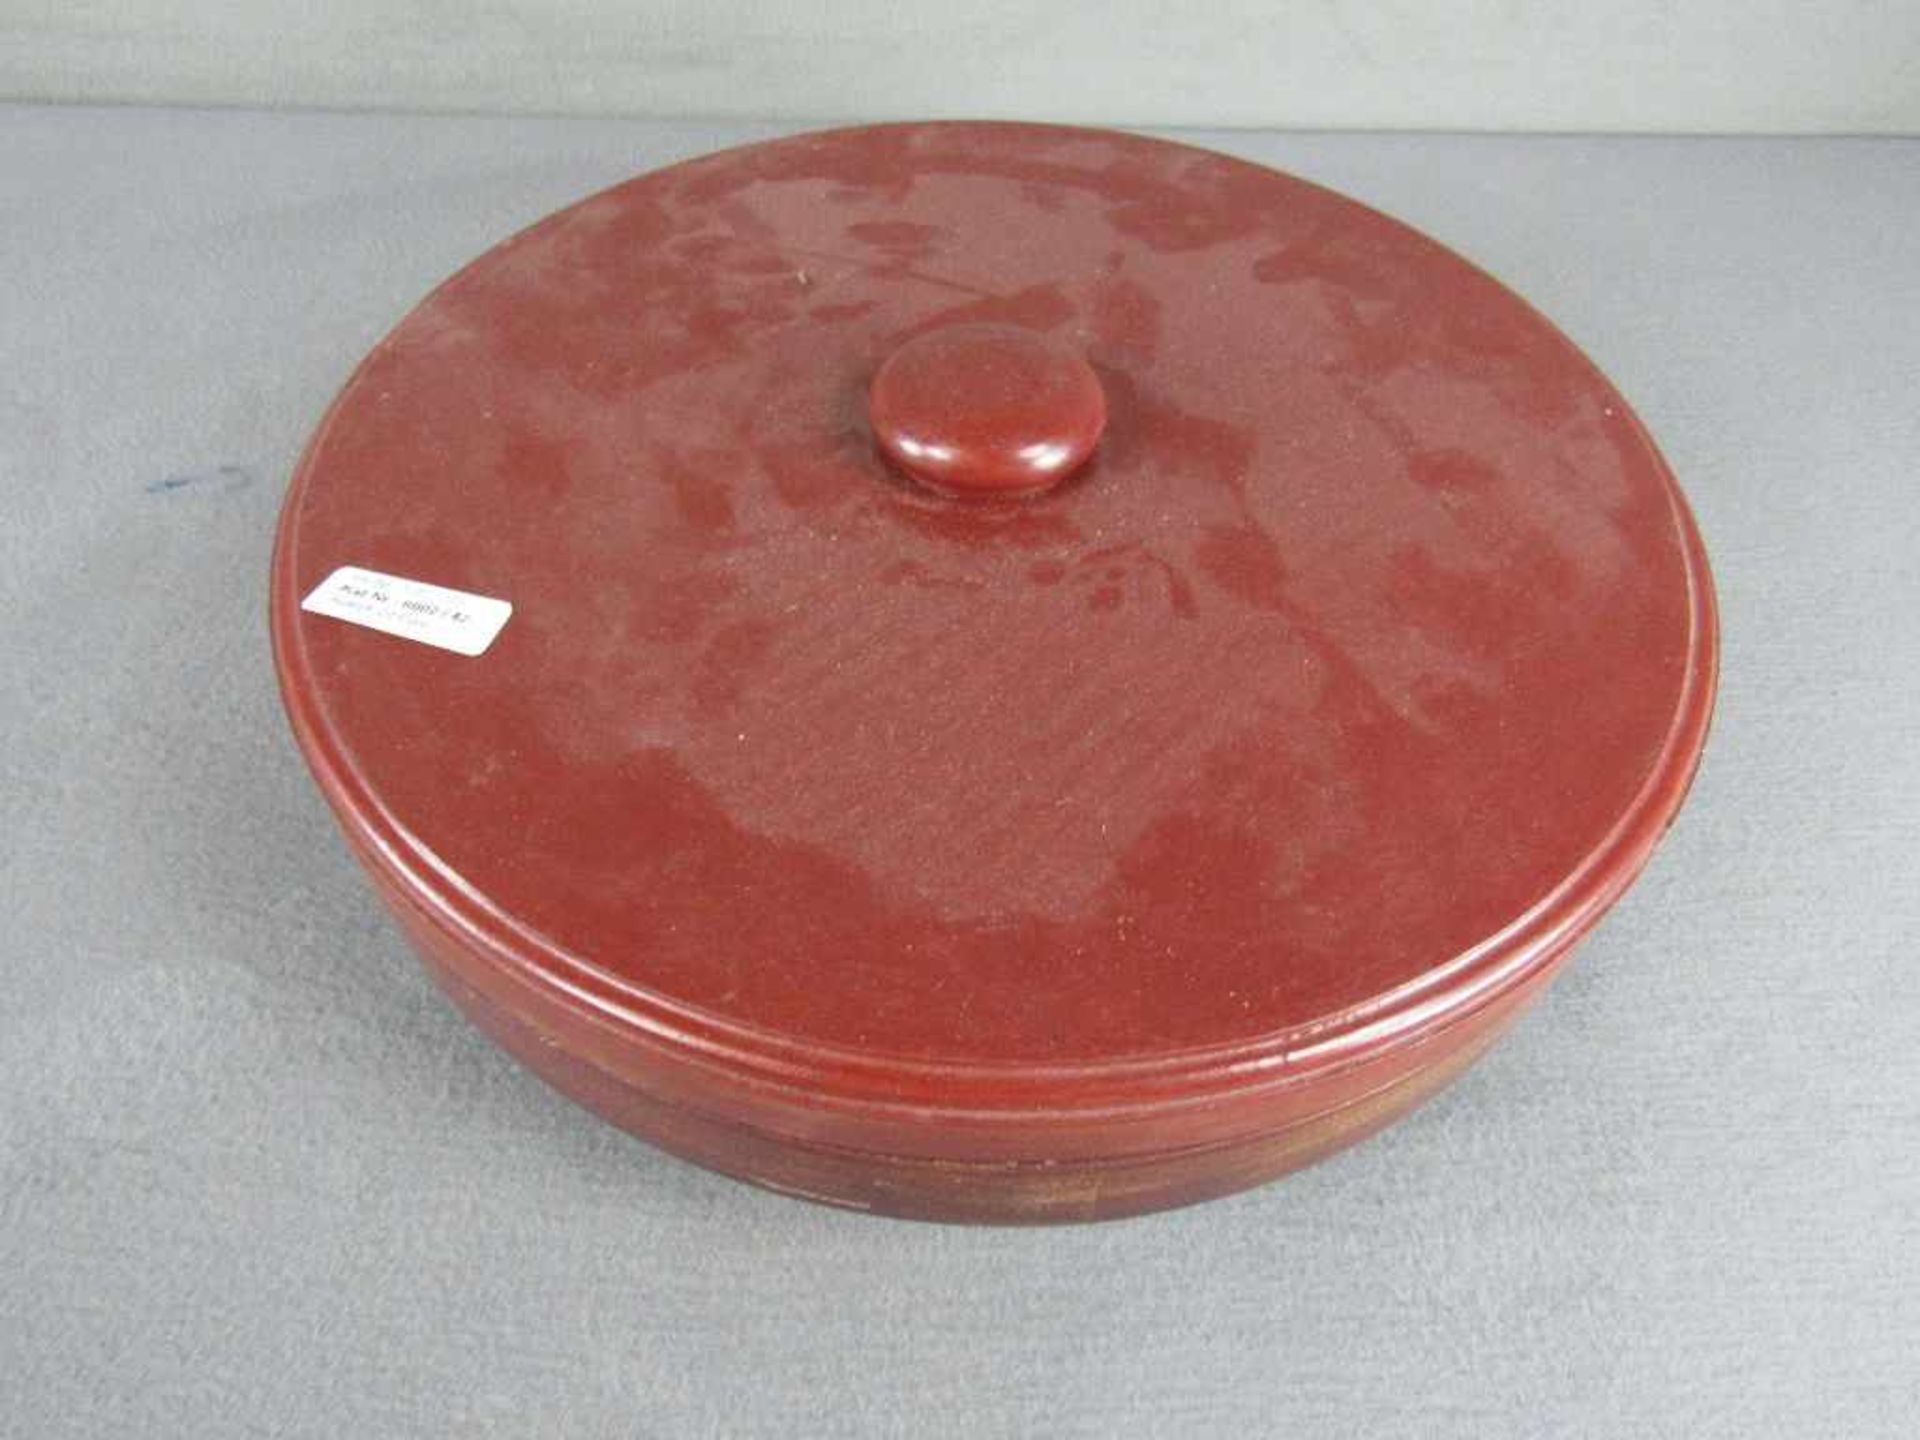 Chinesische Warmhalte bzw - Reismenagerie Schälchen in lasierter Keramik drehbare Holzschatulle - Image 5 of 5